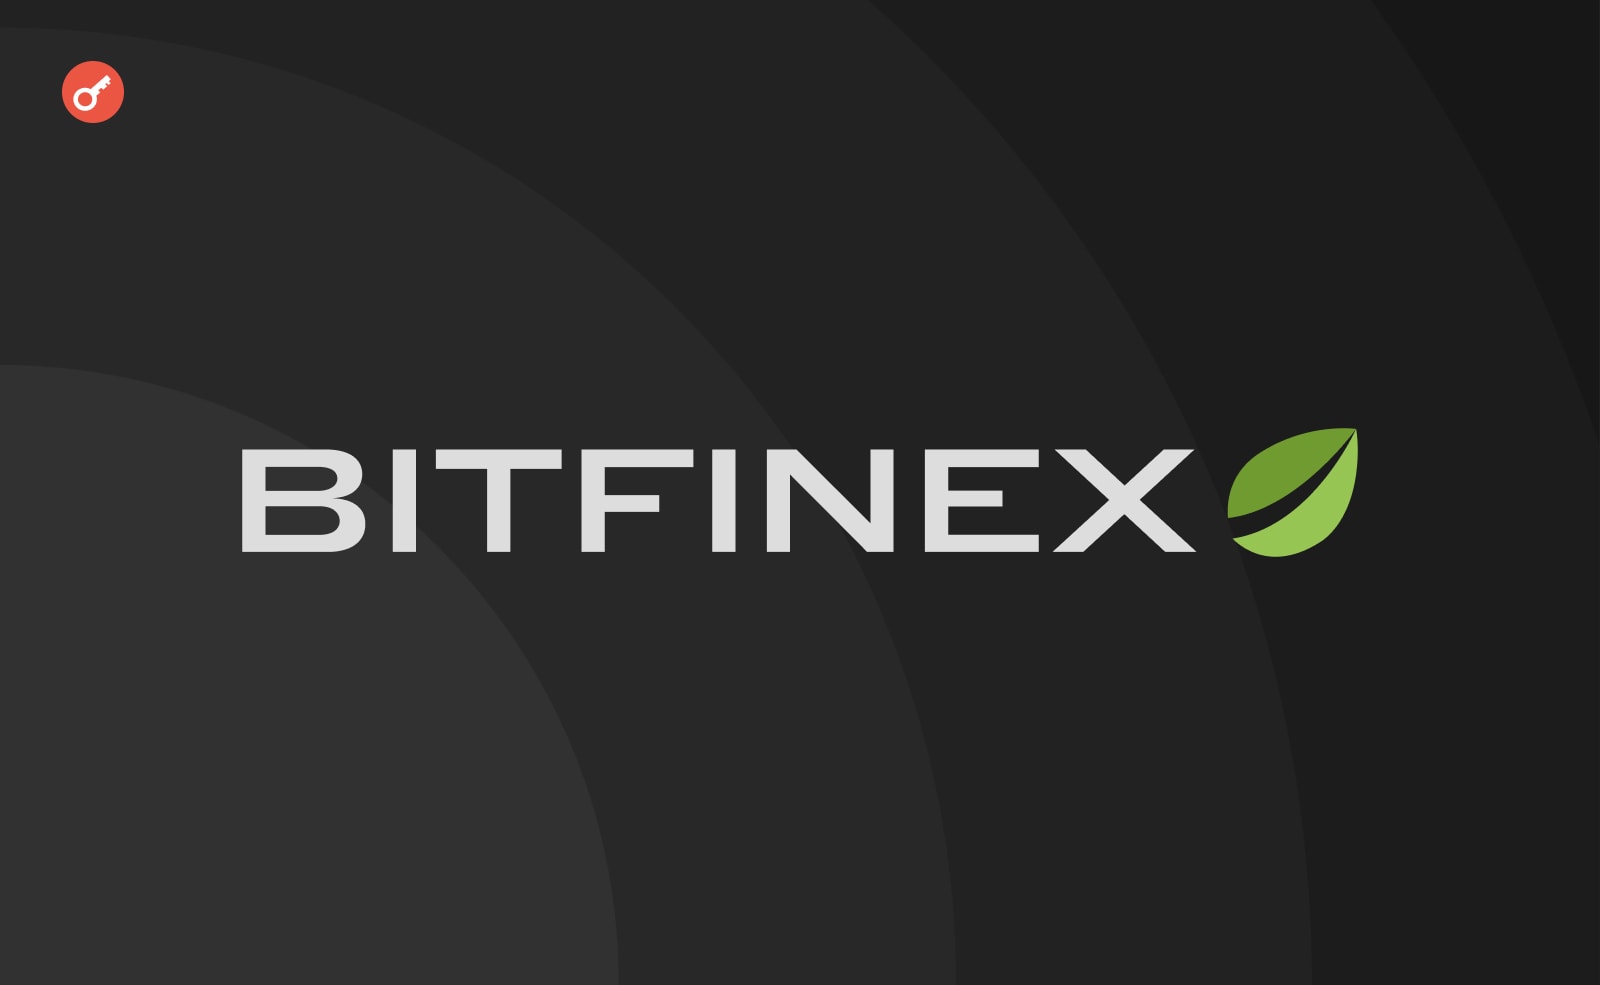 Взлом Bitfinex: одна из фигурантов получила новую работу в крупной техно-компании. Заглавный коллаж новости.